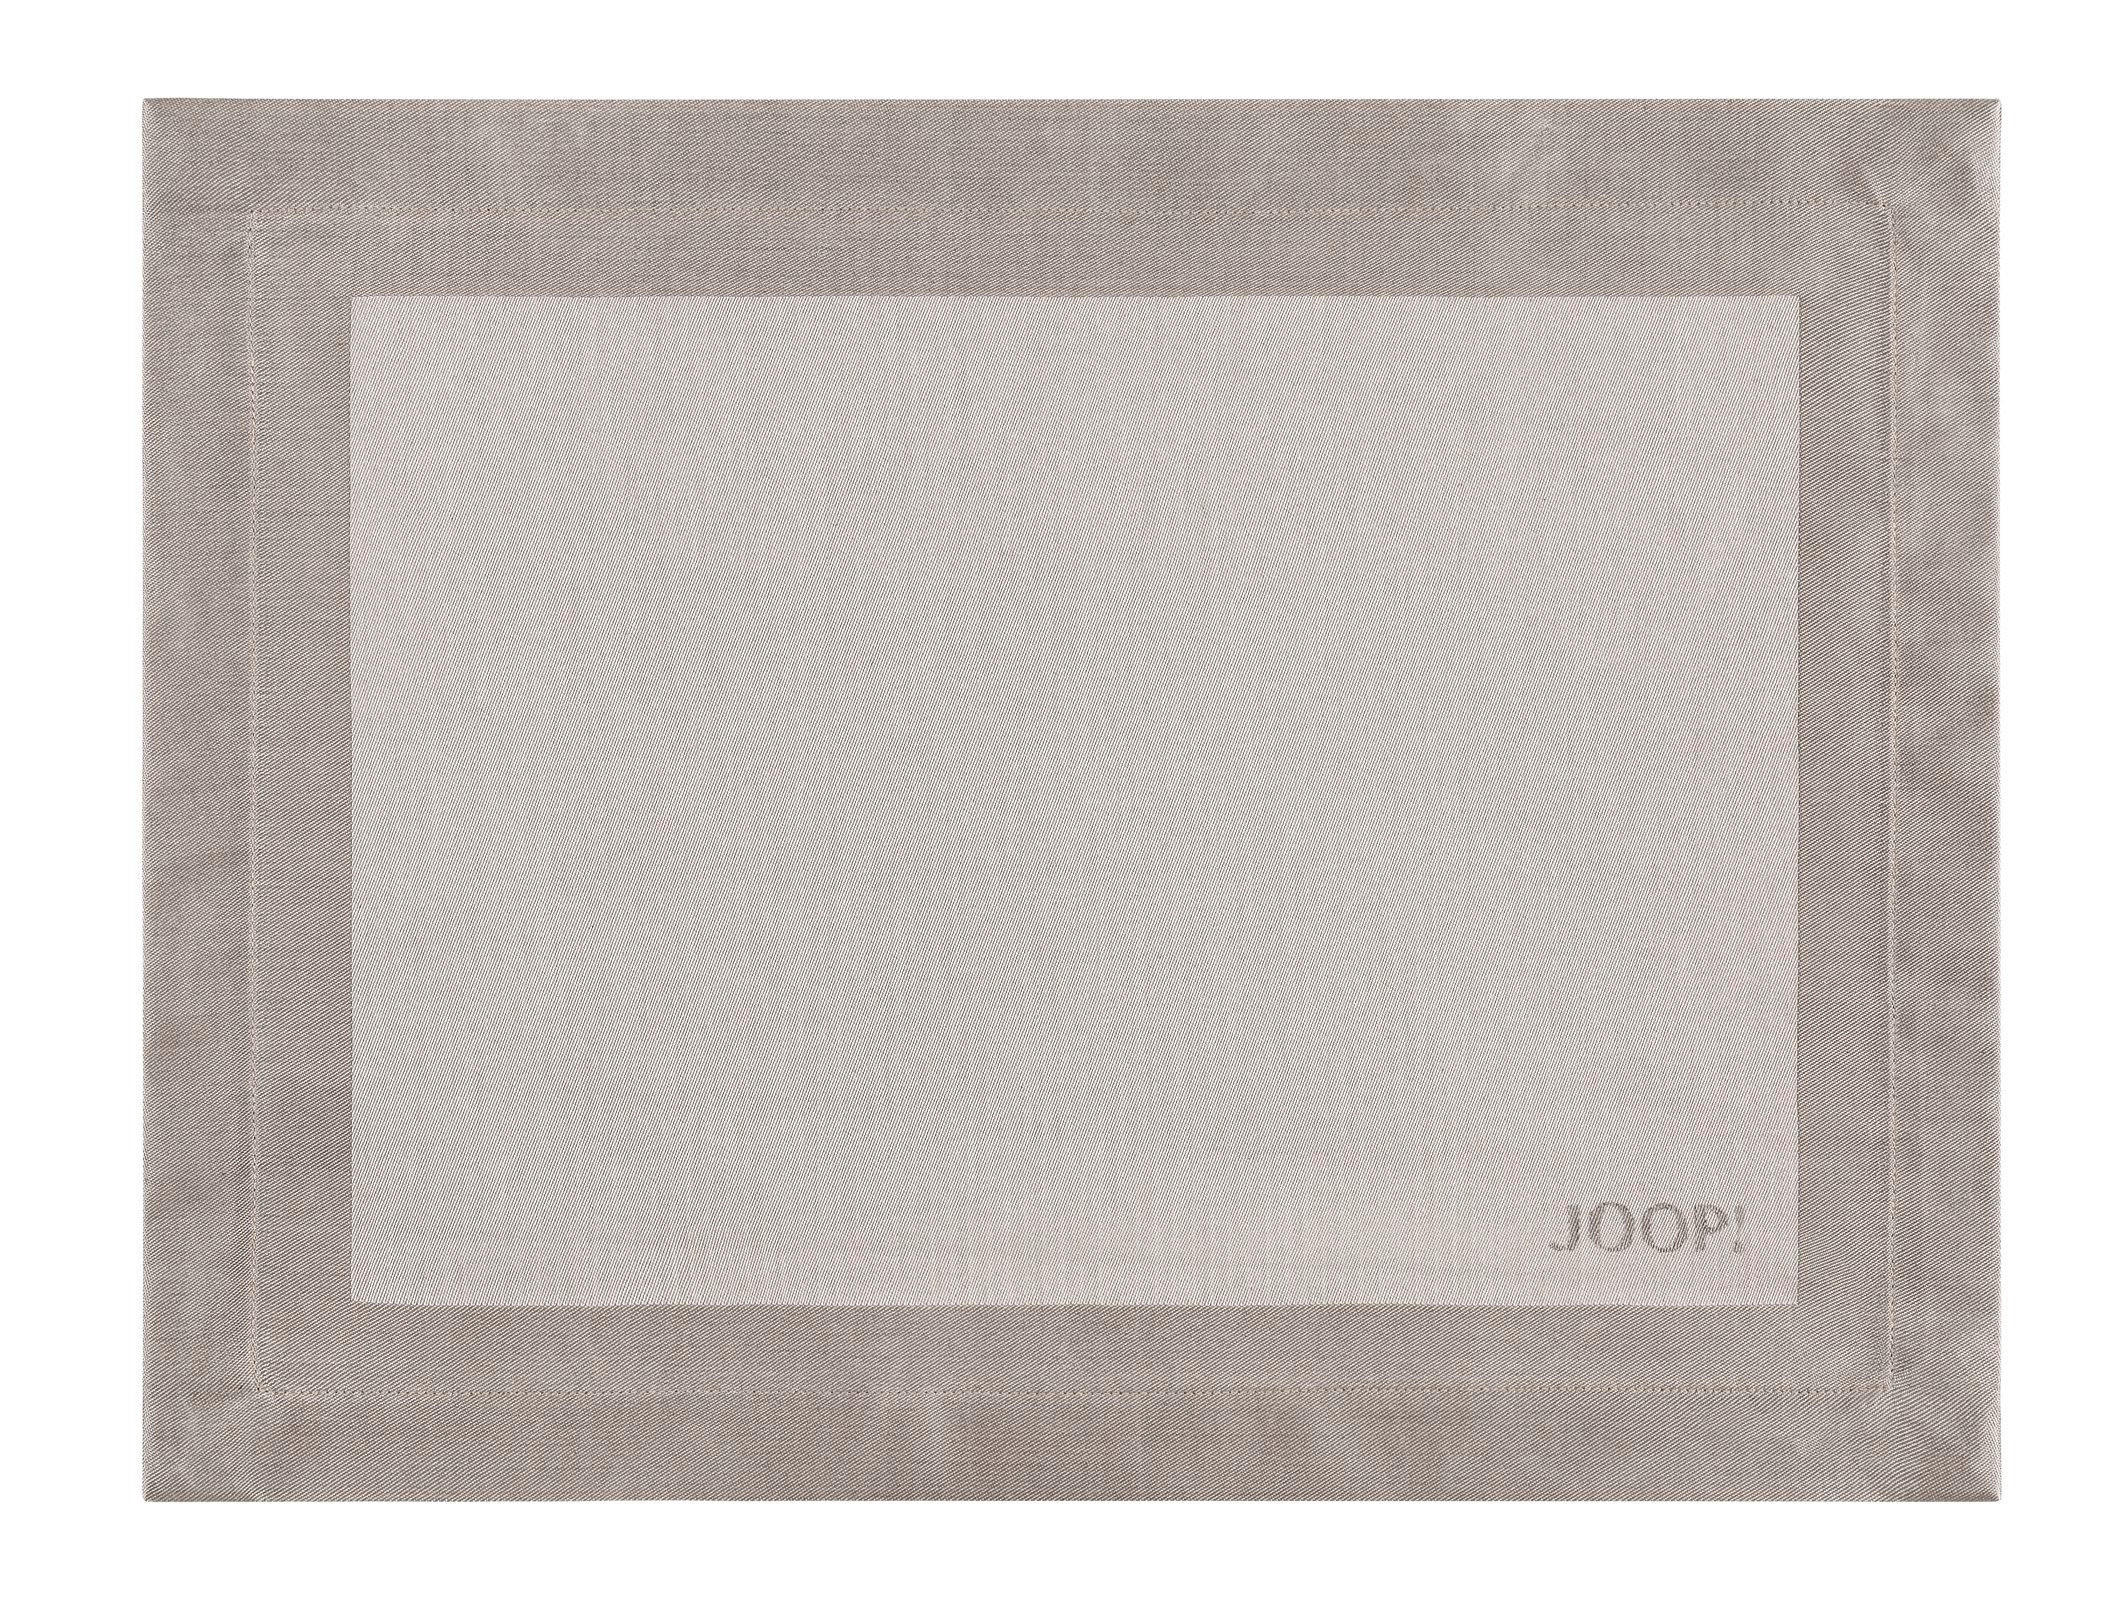 TISCHSET 2ER-SET Textil Sandfarben 36/48 cm  - Sandfarben, Design, Textil (36/48cm) - Joop!